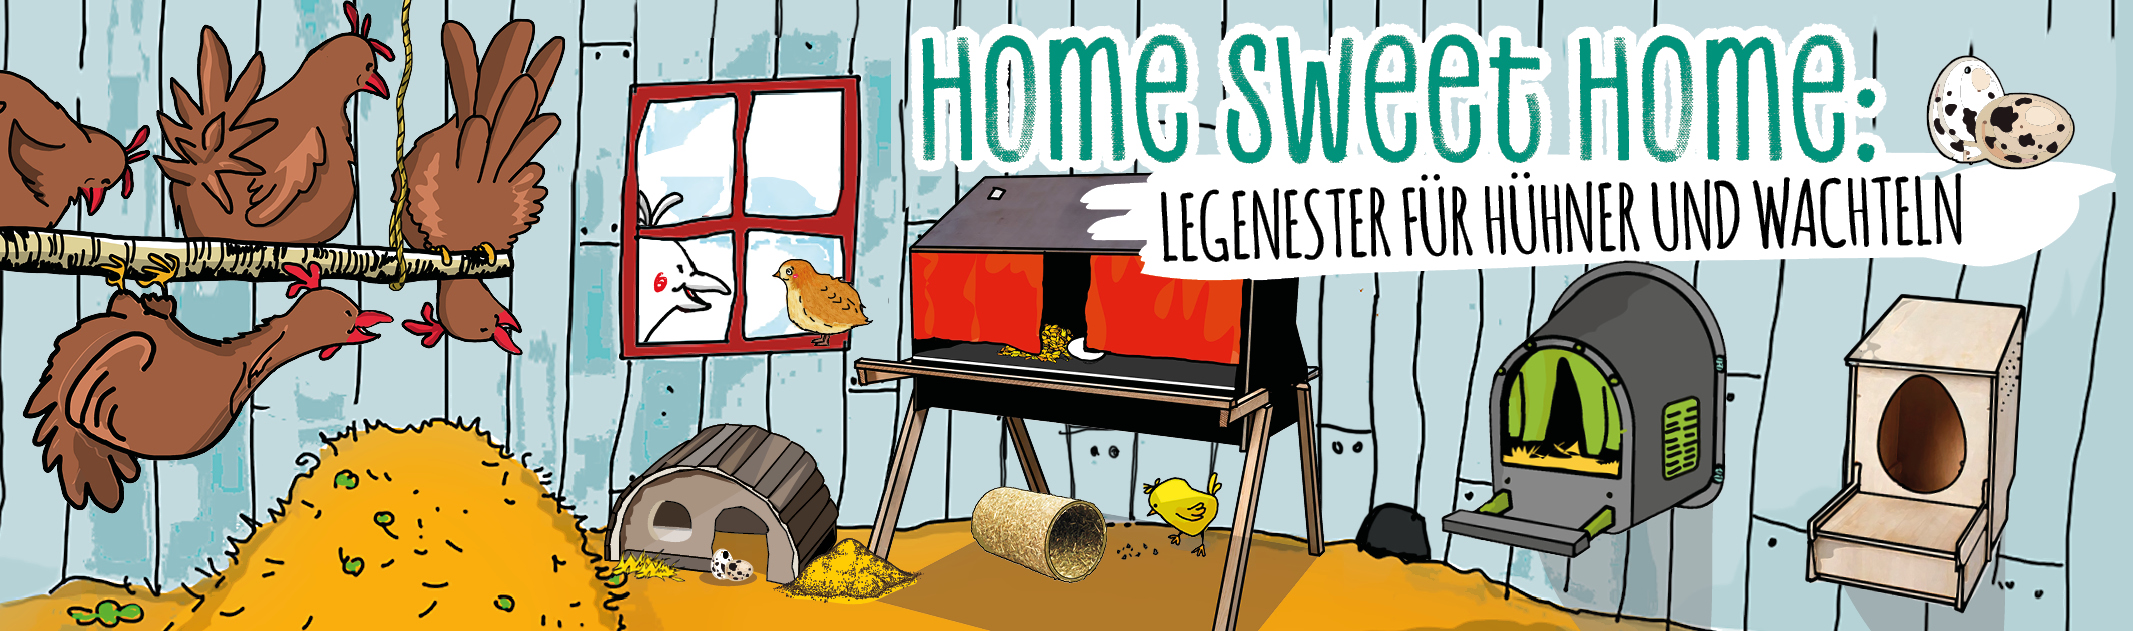 Home sweet home: Legenester für Hühner und Wachteln